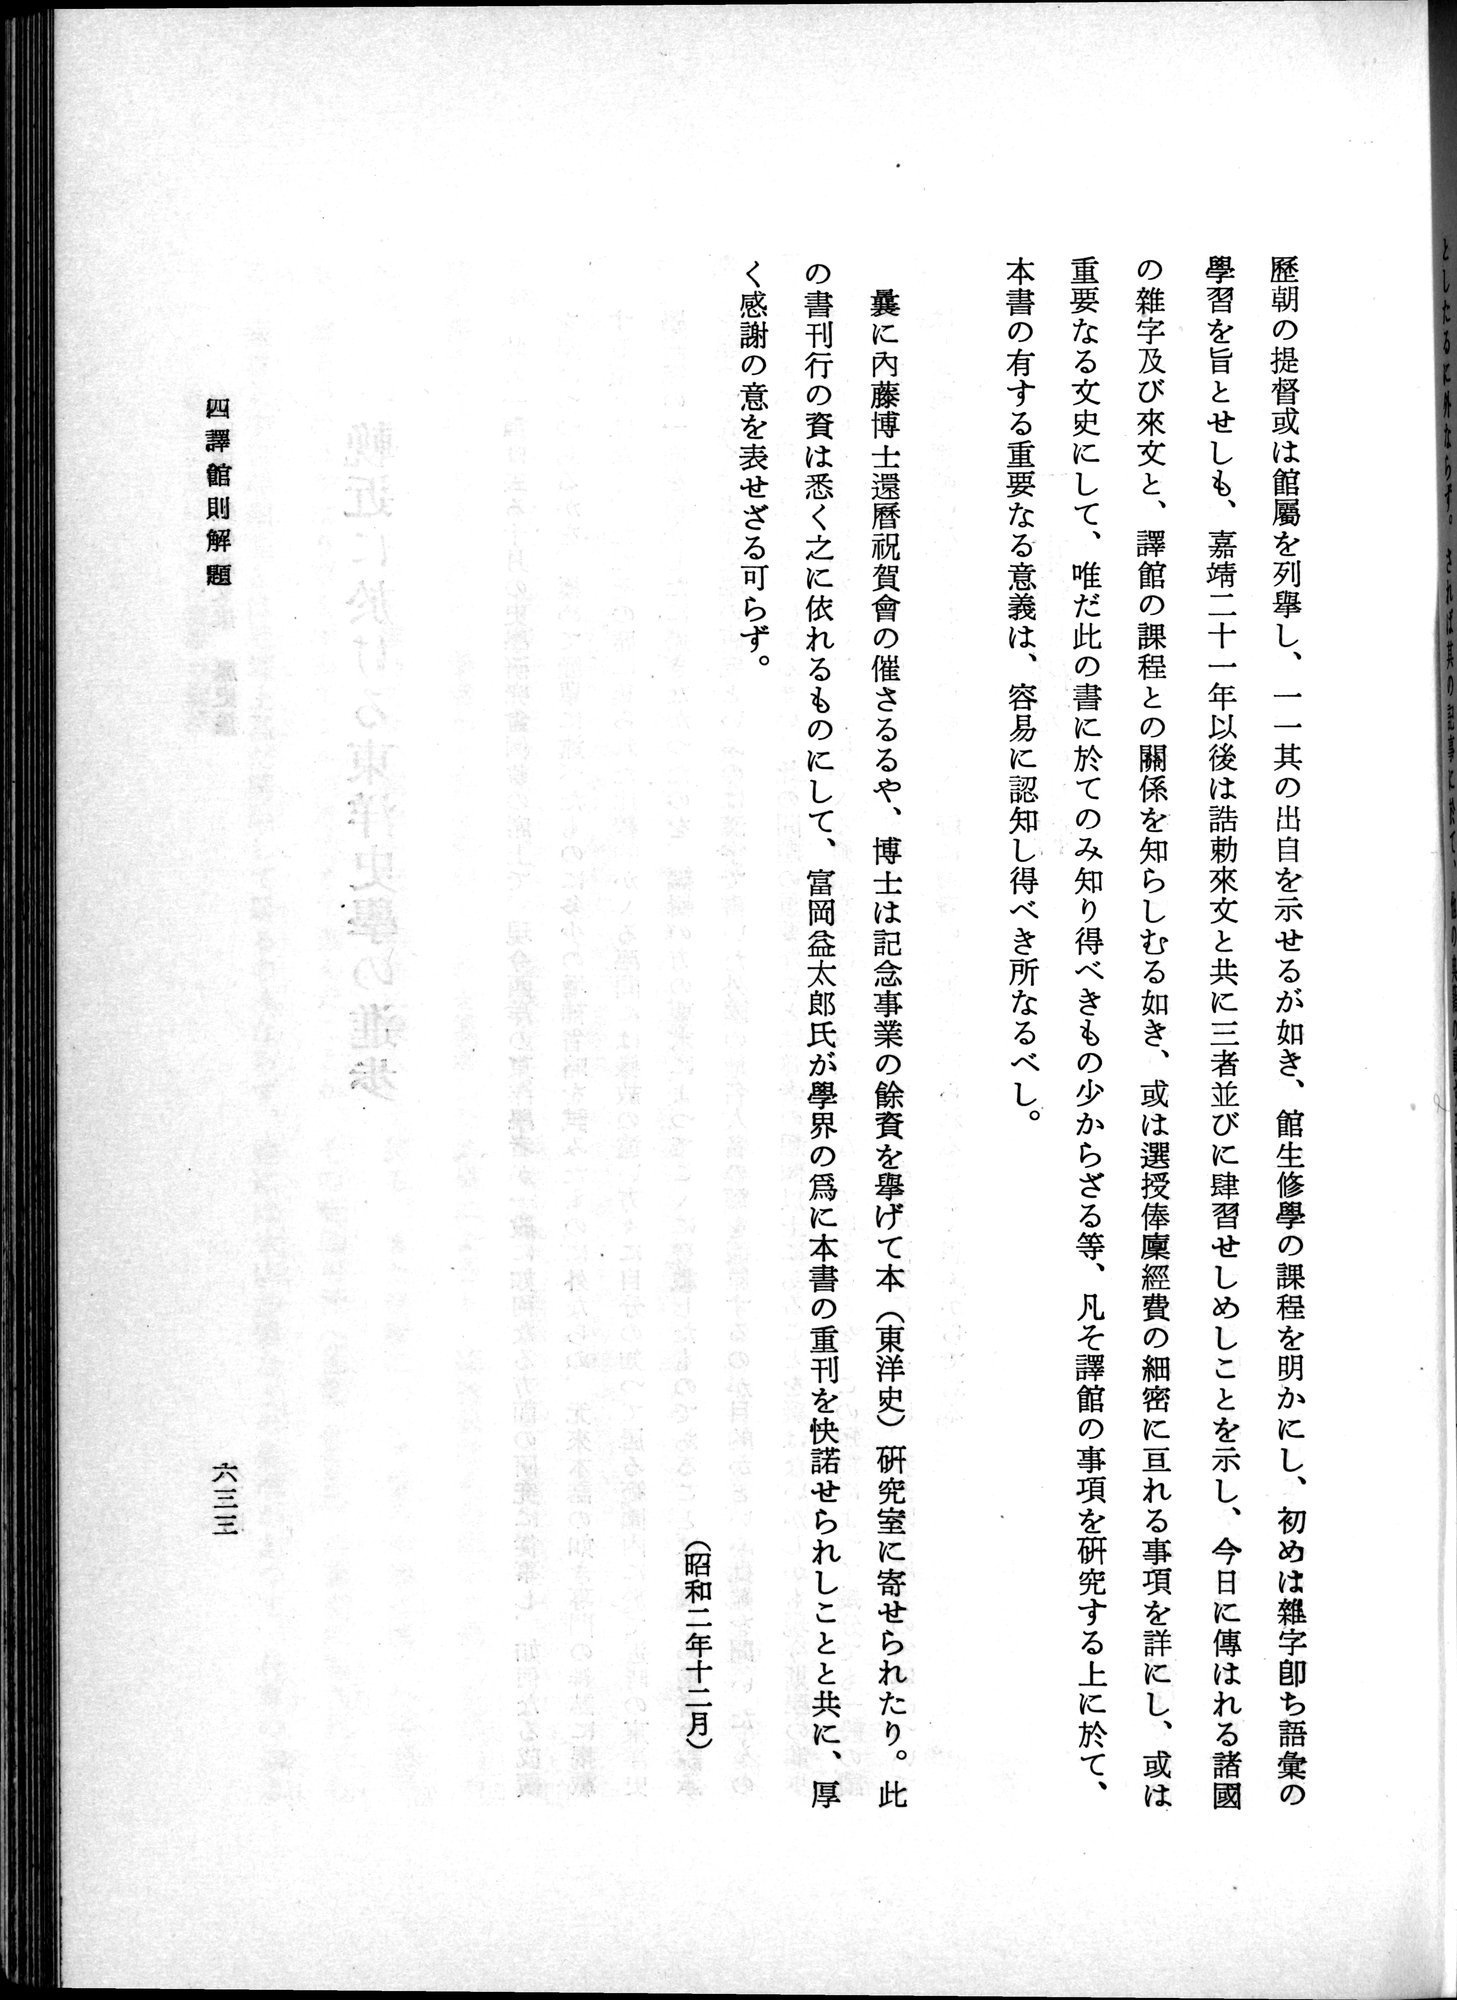 羽田博士史学論文集 : vol.1 / Page 671 (Grayscale High Resolution Image)